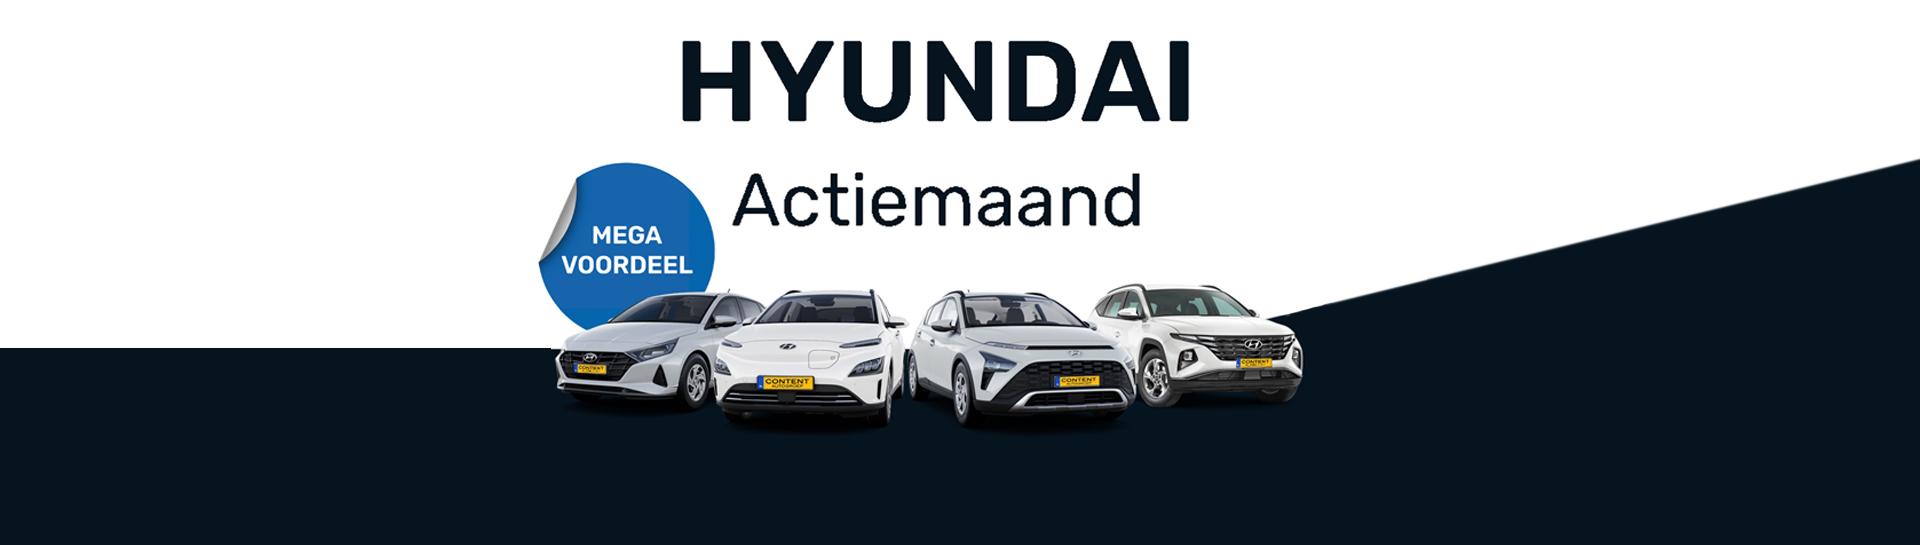 Hyundai Actiemaand